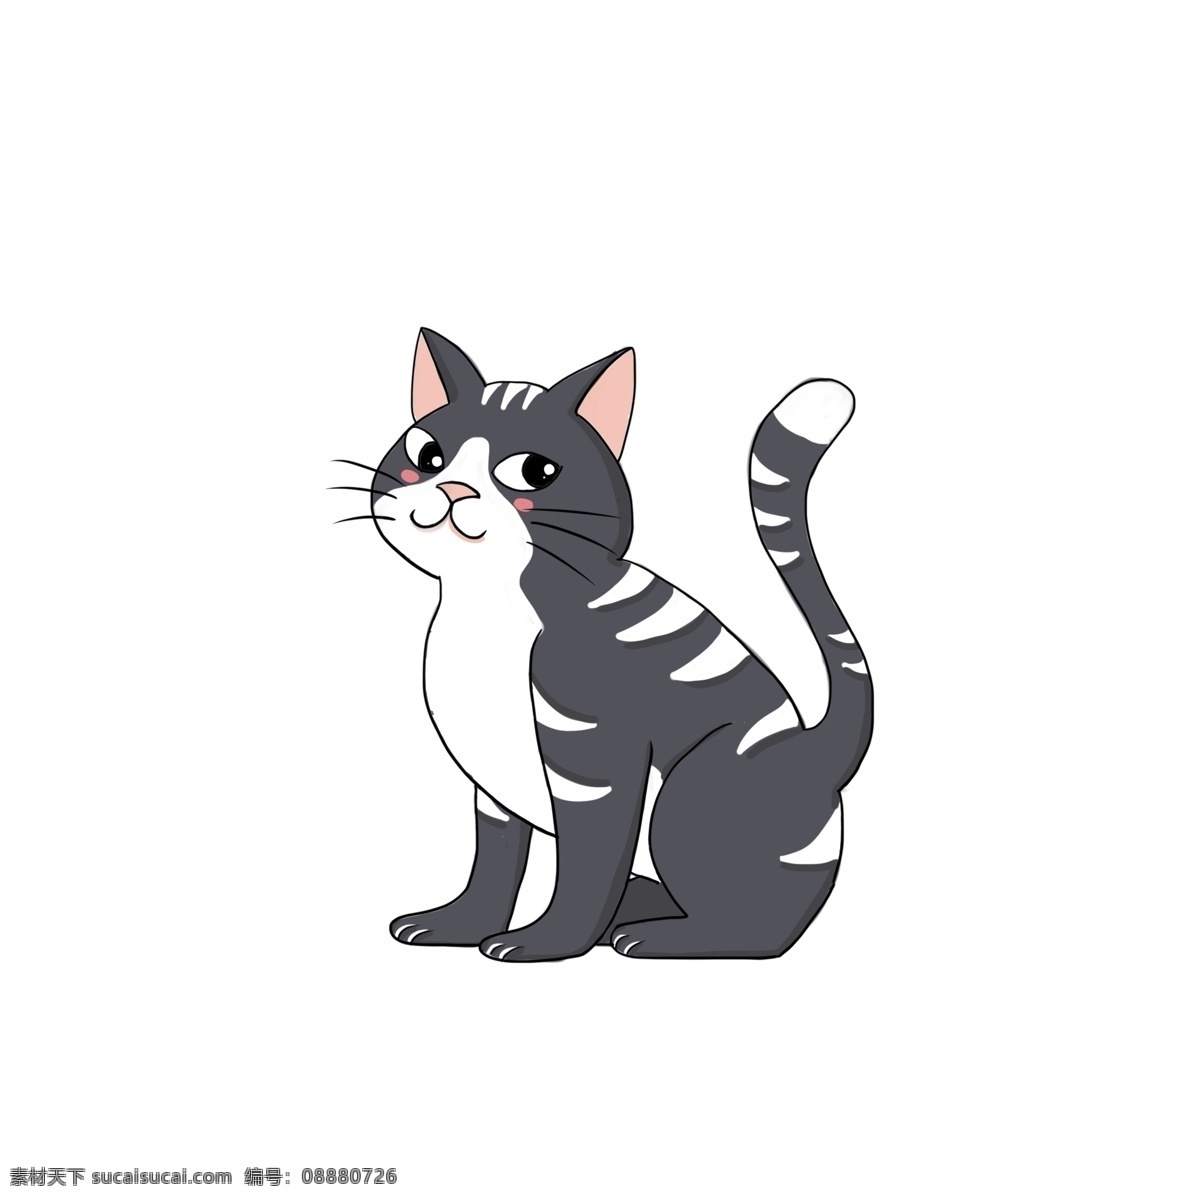 傲 娇小 黑猫 动物 可爱 卡通 小猫 漫画 萌宠 小花猫 插画设计